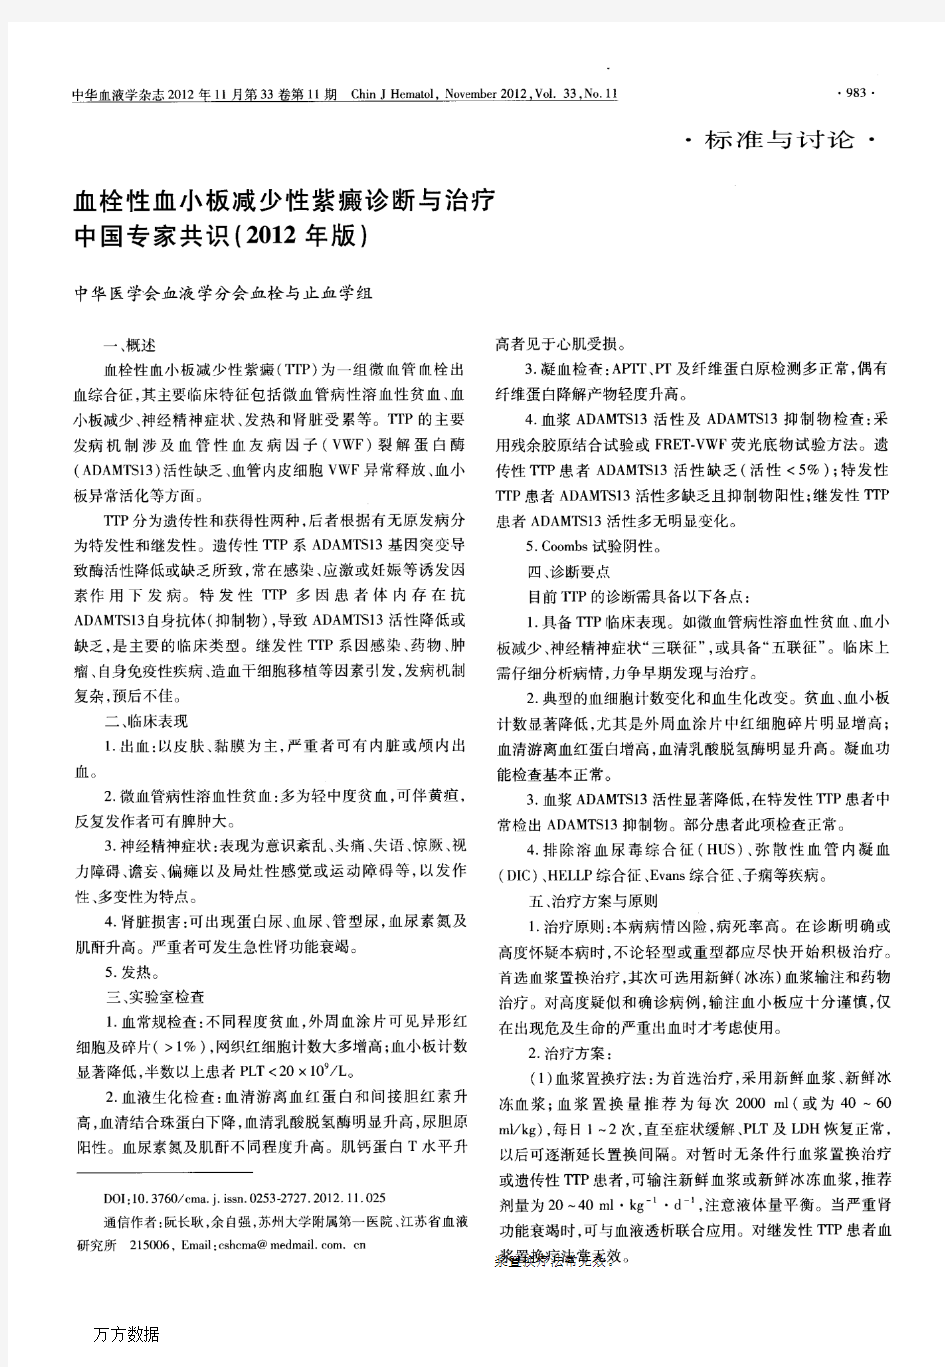 血栓性血小板减少性紫癜诊断与治疗中国专家共识(2012年版)